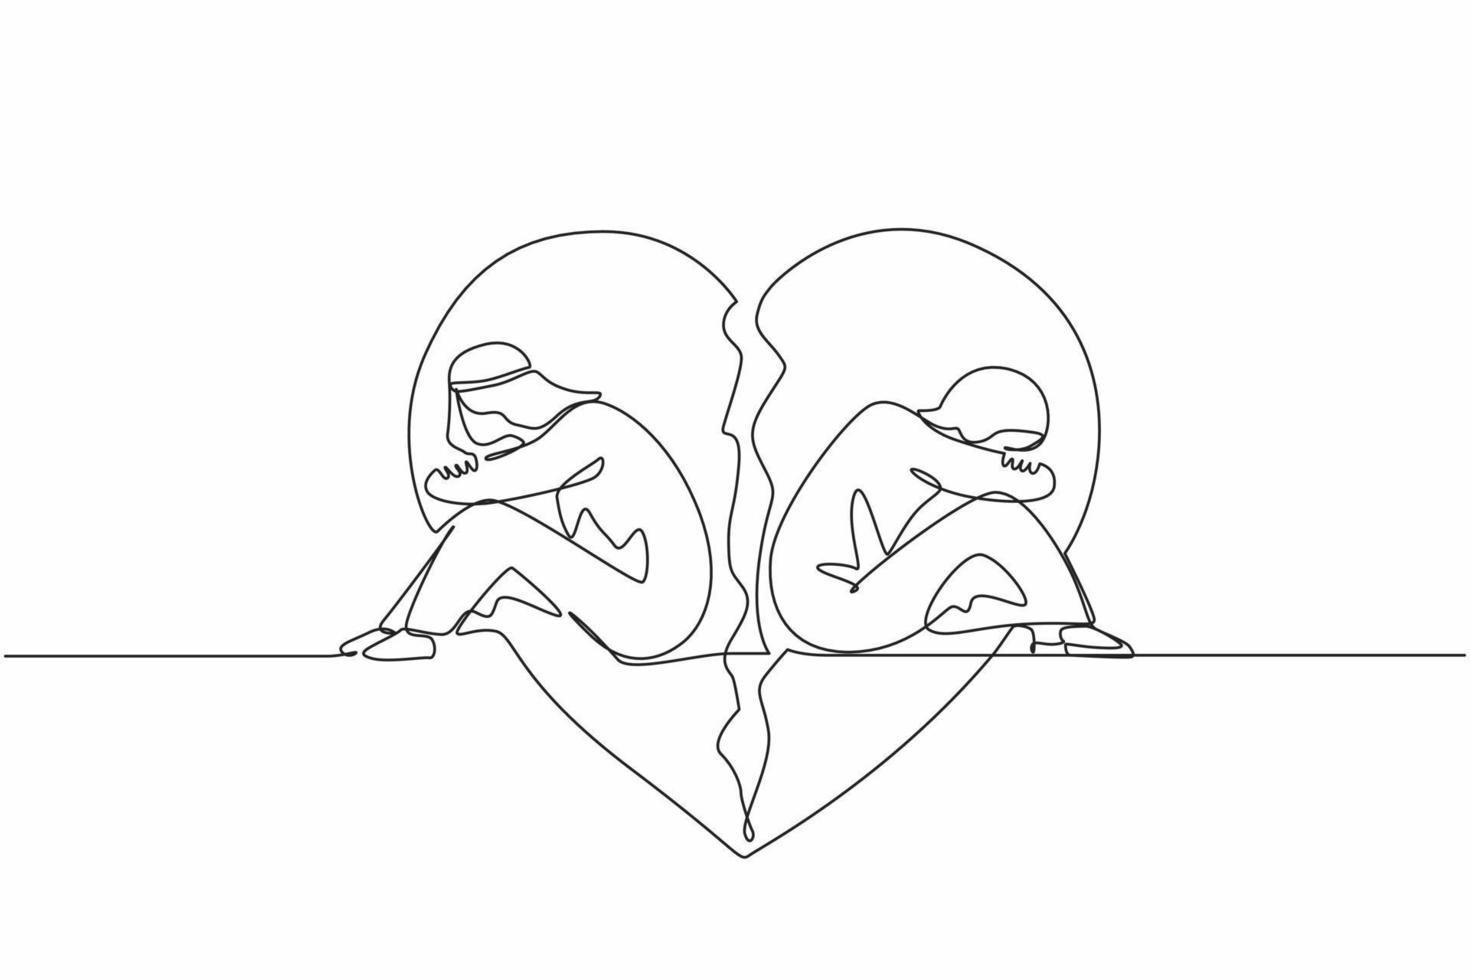 dibujo de una sola línea pareja de hombre y mujer árabes, sentados espalda con espalda, tristes y enojados el uno con el otro. ruptura, problemas de relación, corazón roto, separación. vector de diseño de dibujo de línea continua